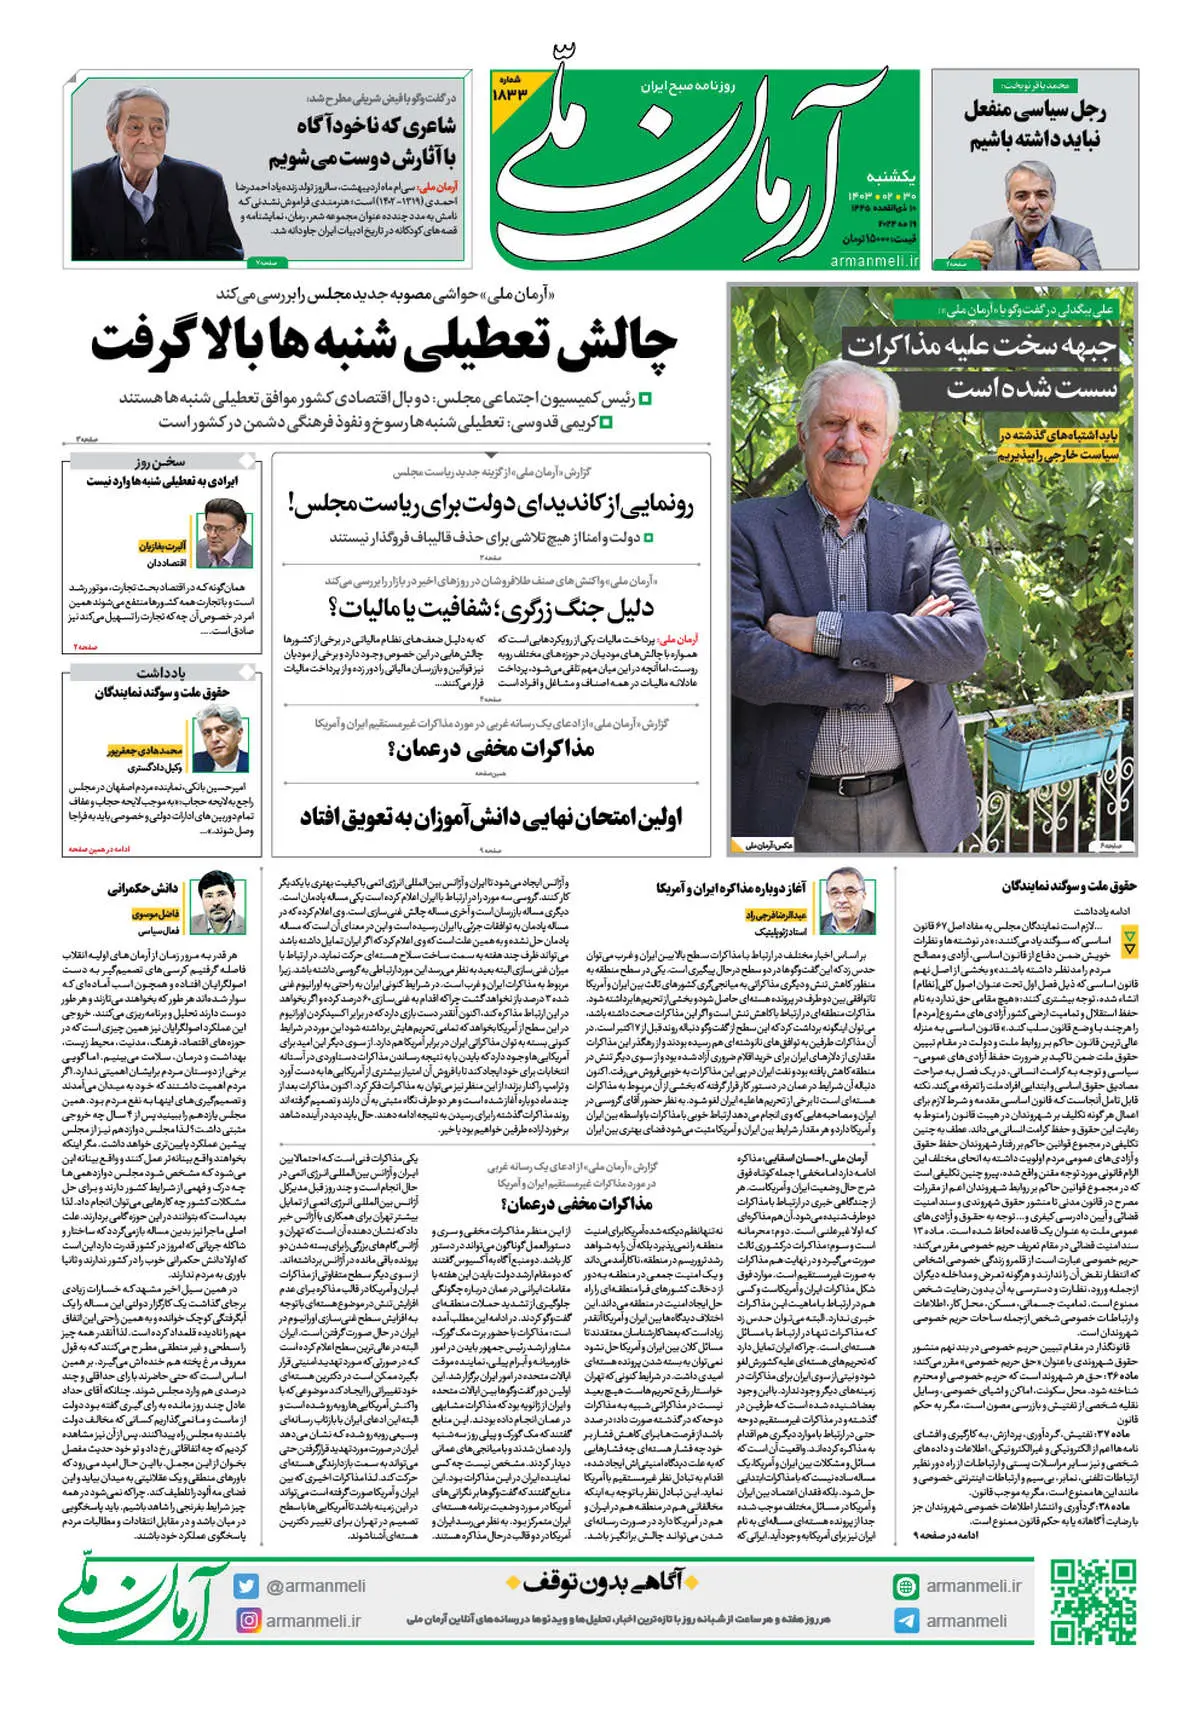 روزنامه آرمان ملی - یکشنبه 30 اردیبهشت - شماره 1833